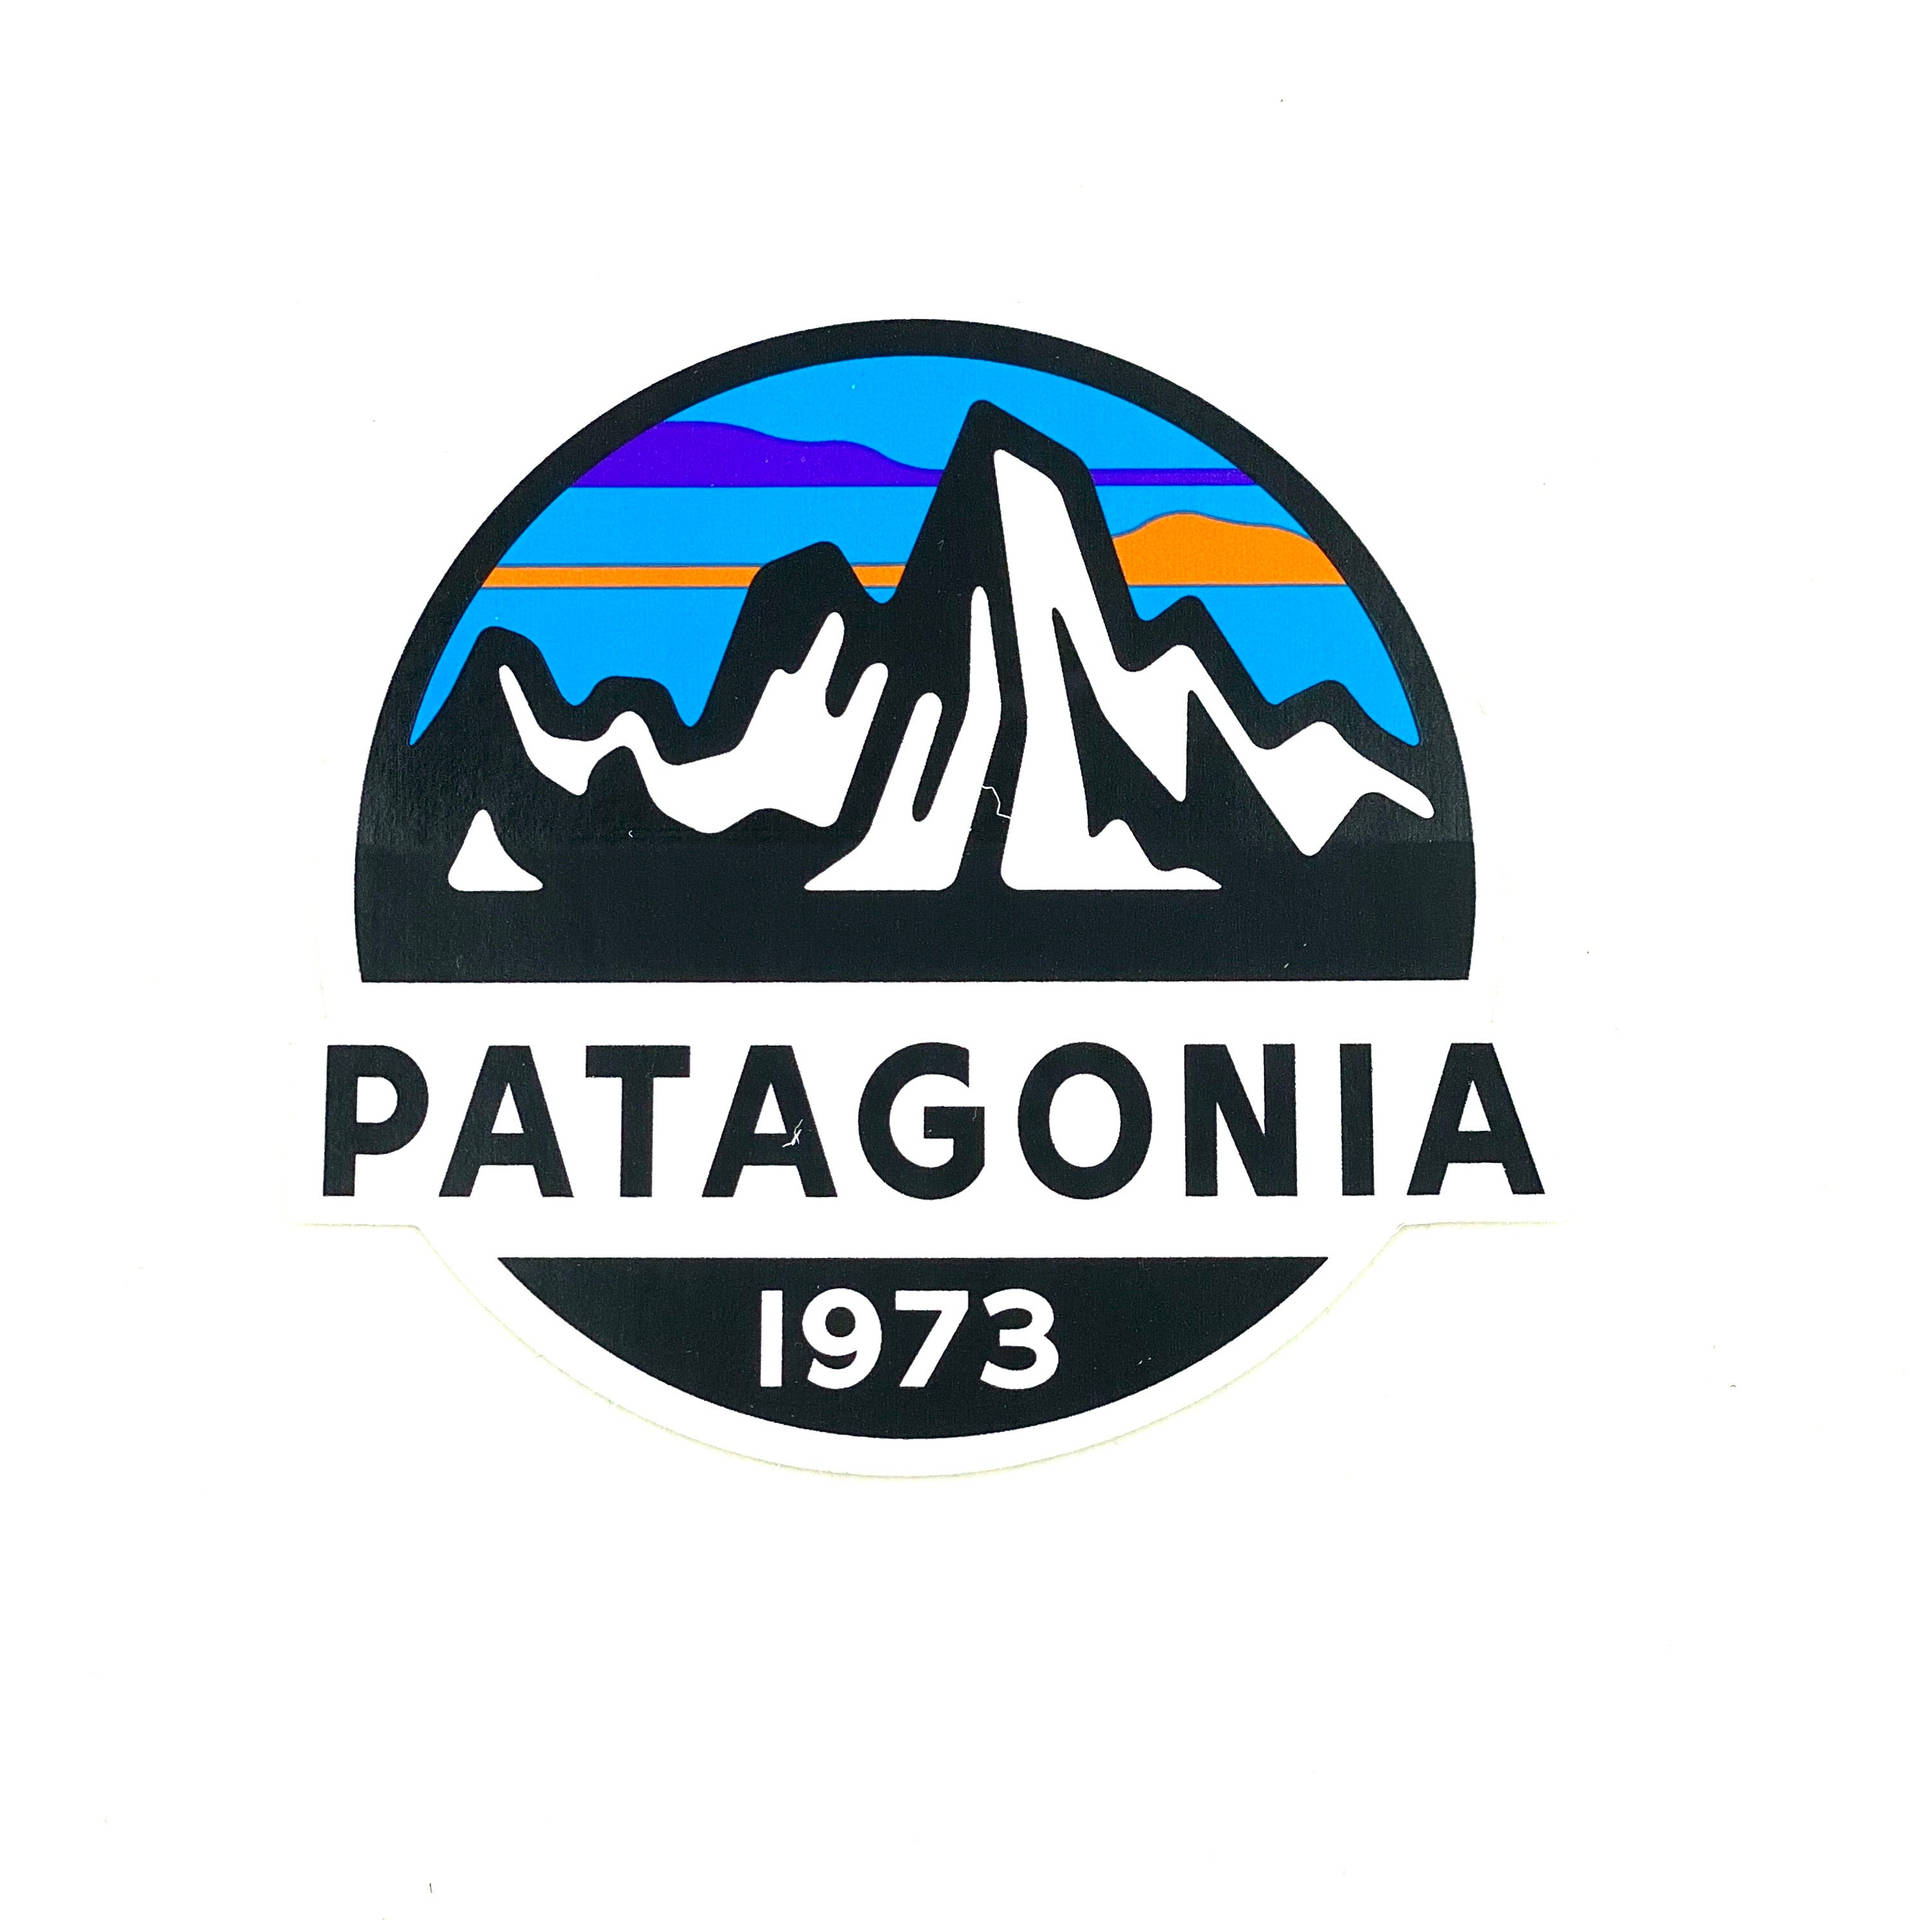 Download Patagonia Logo 1973 Wallpaper | Wallpapers.com